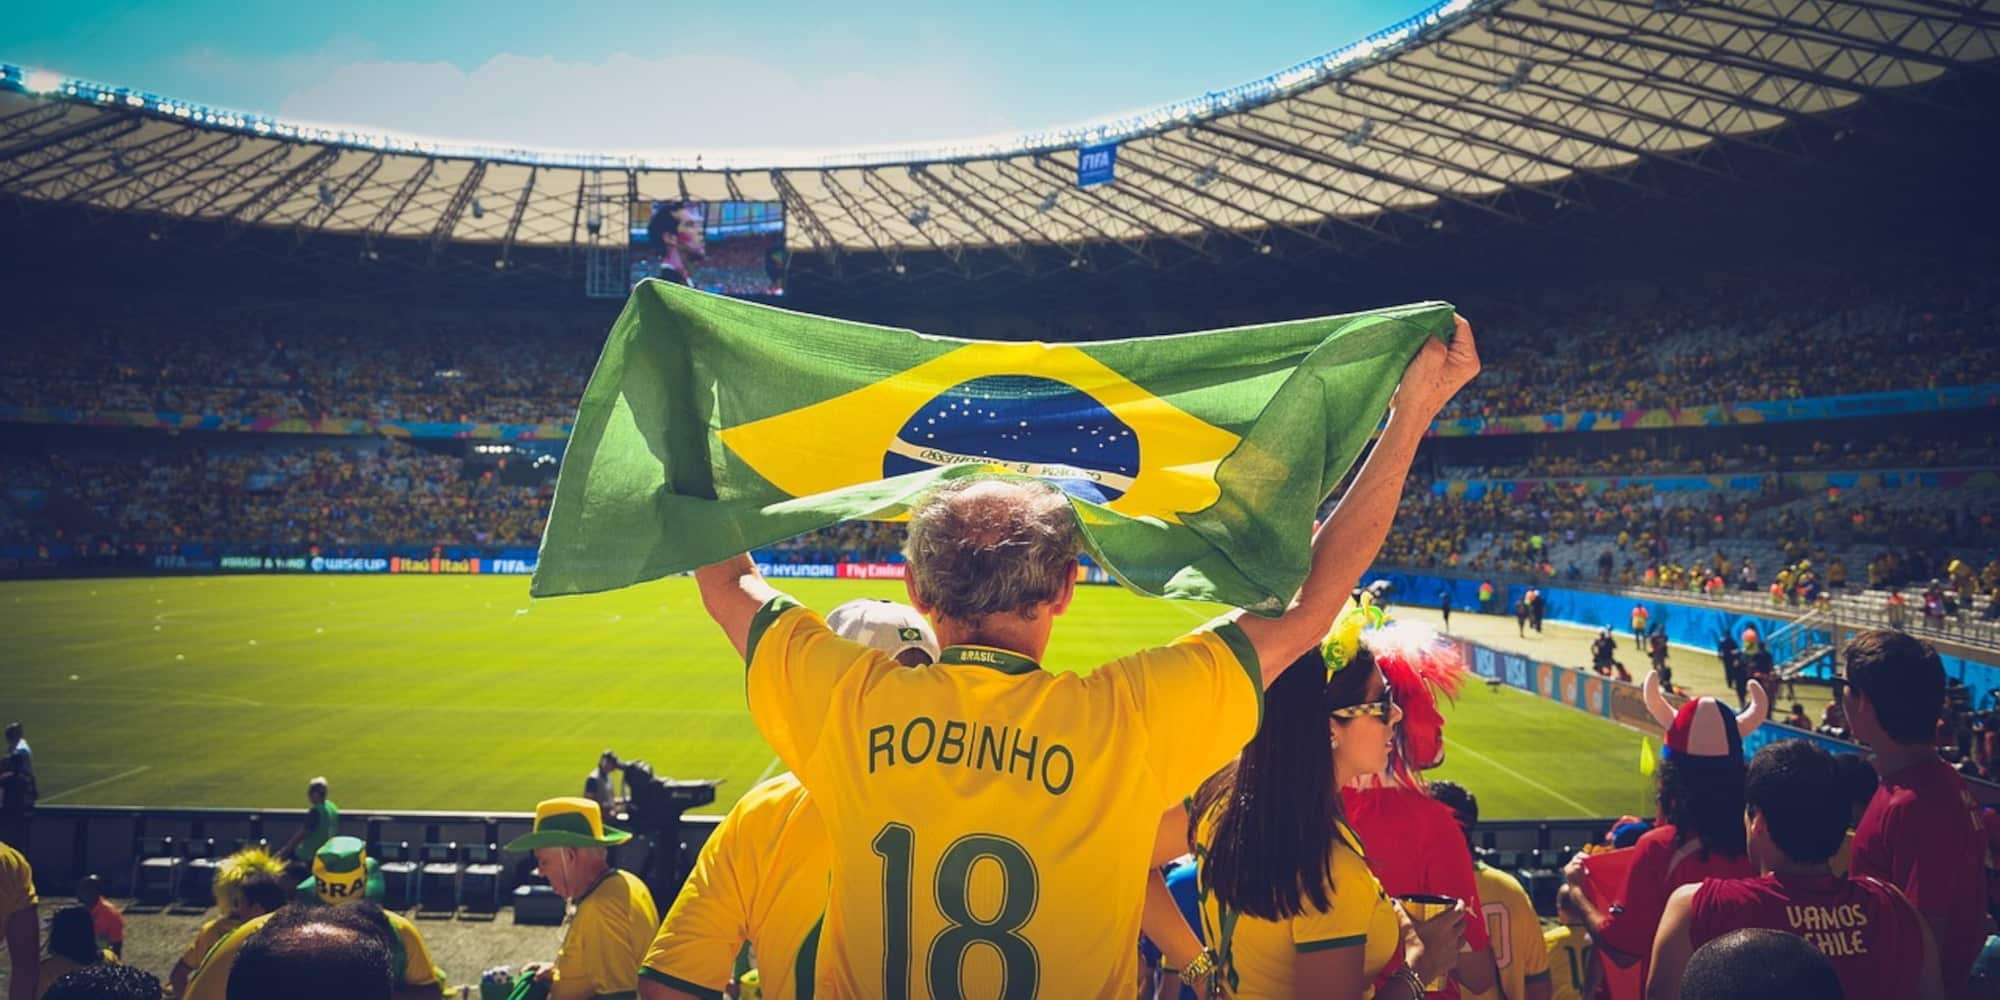 Αυτές, είναι οι πρώτες δύο καταδίκες για την υπόθεση των «στημένων αγώνων» που συγκλόνισε την Βραζιλία